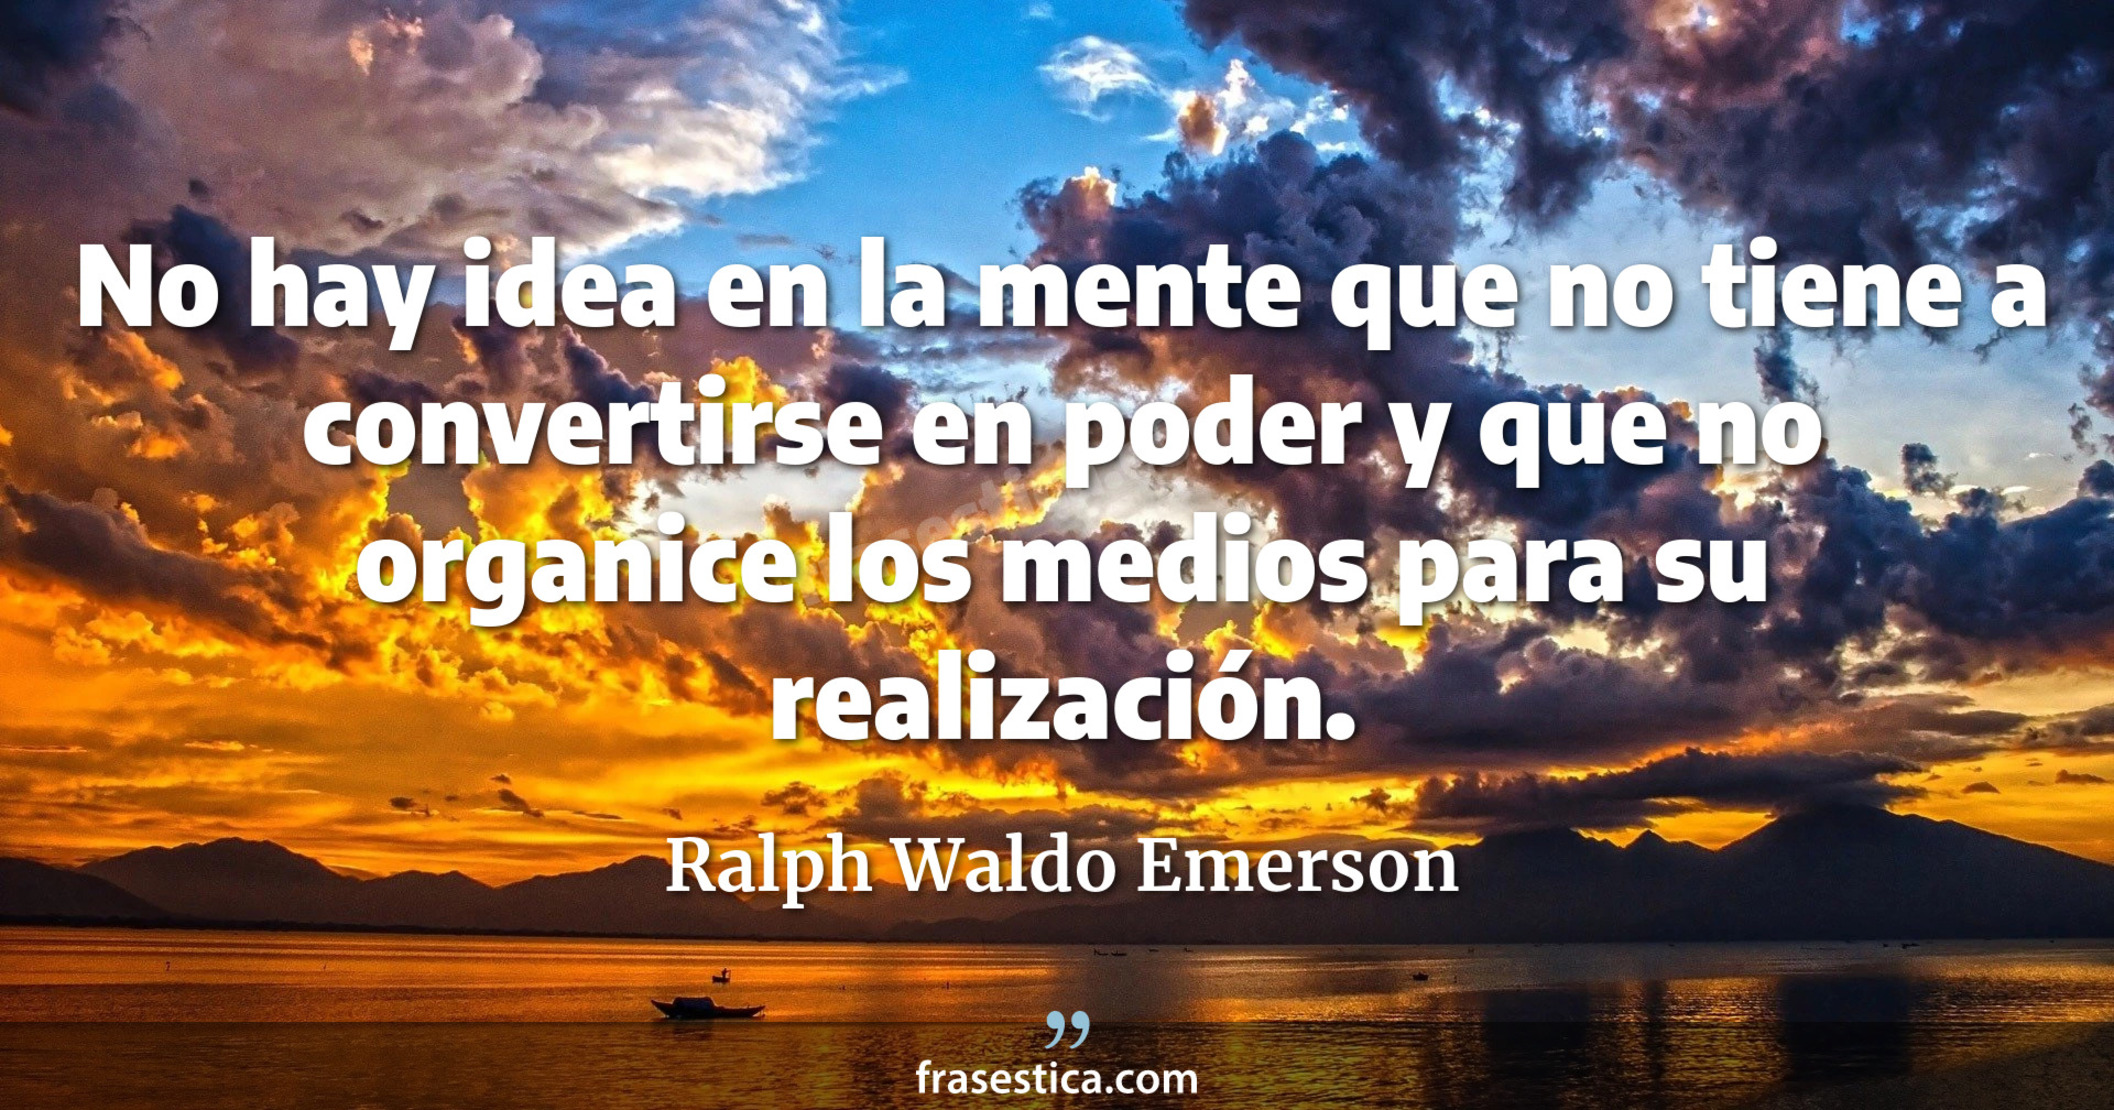 No hay idea en la mente que no tiene a convertirse en poder y que no organice los medios para su realización. - Ralph Waldo Emerson